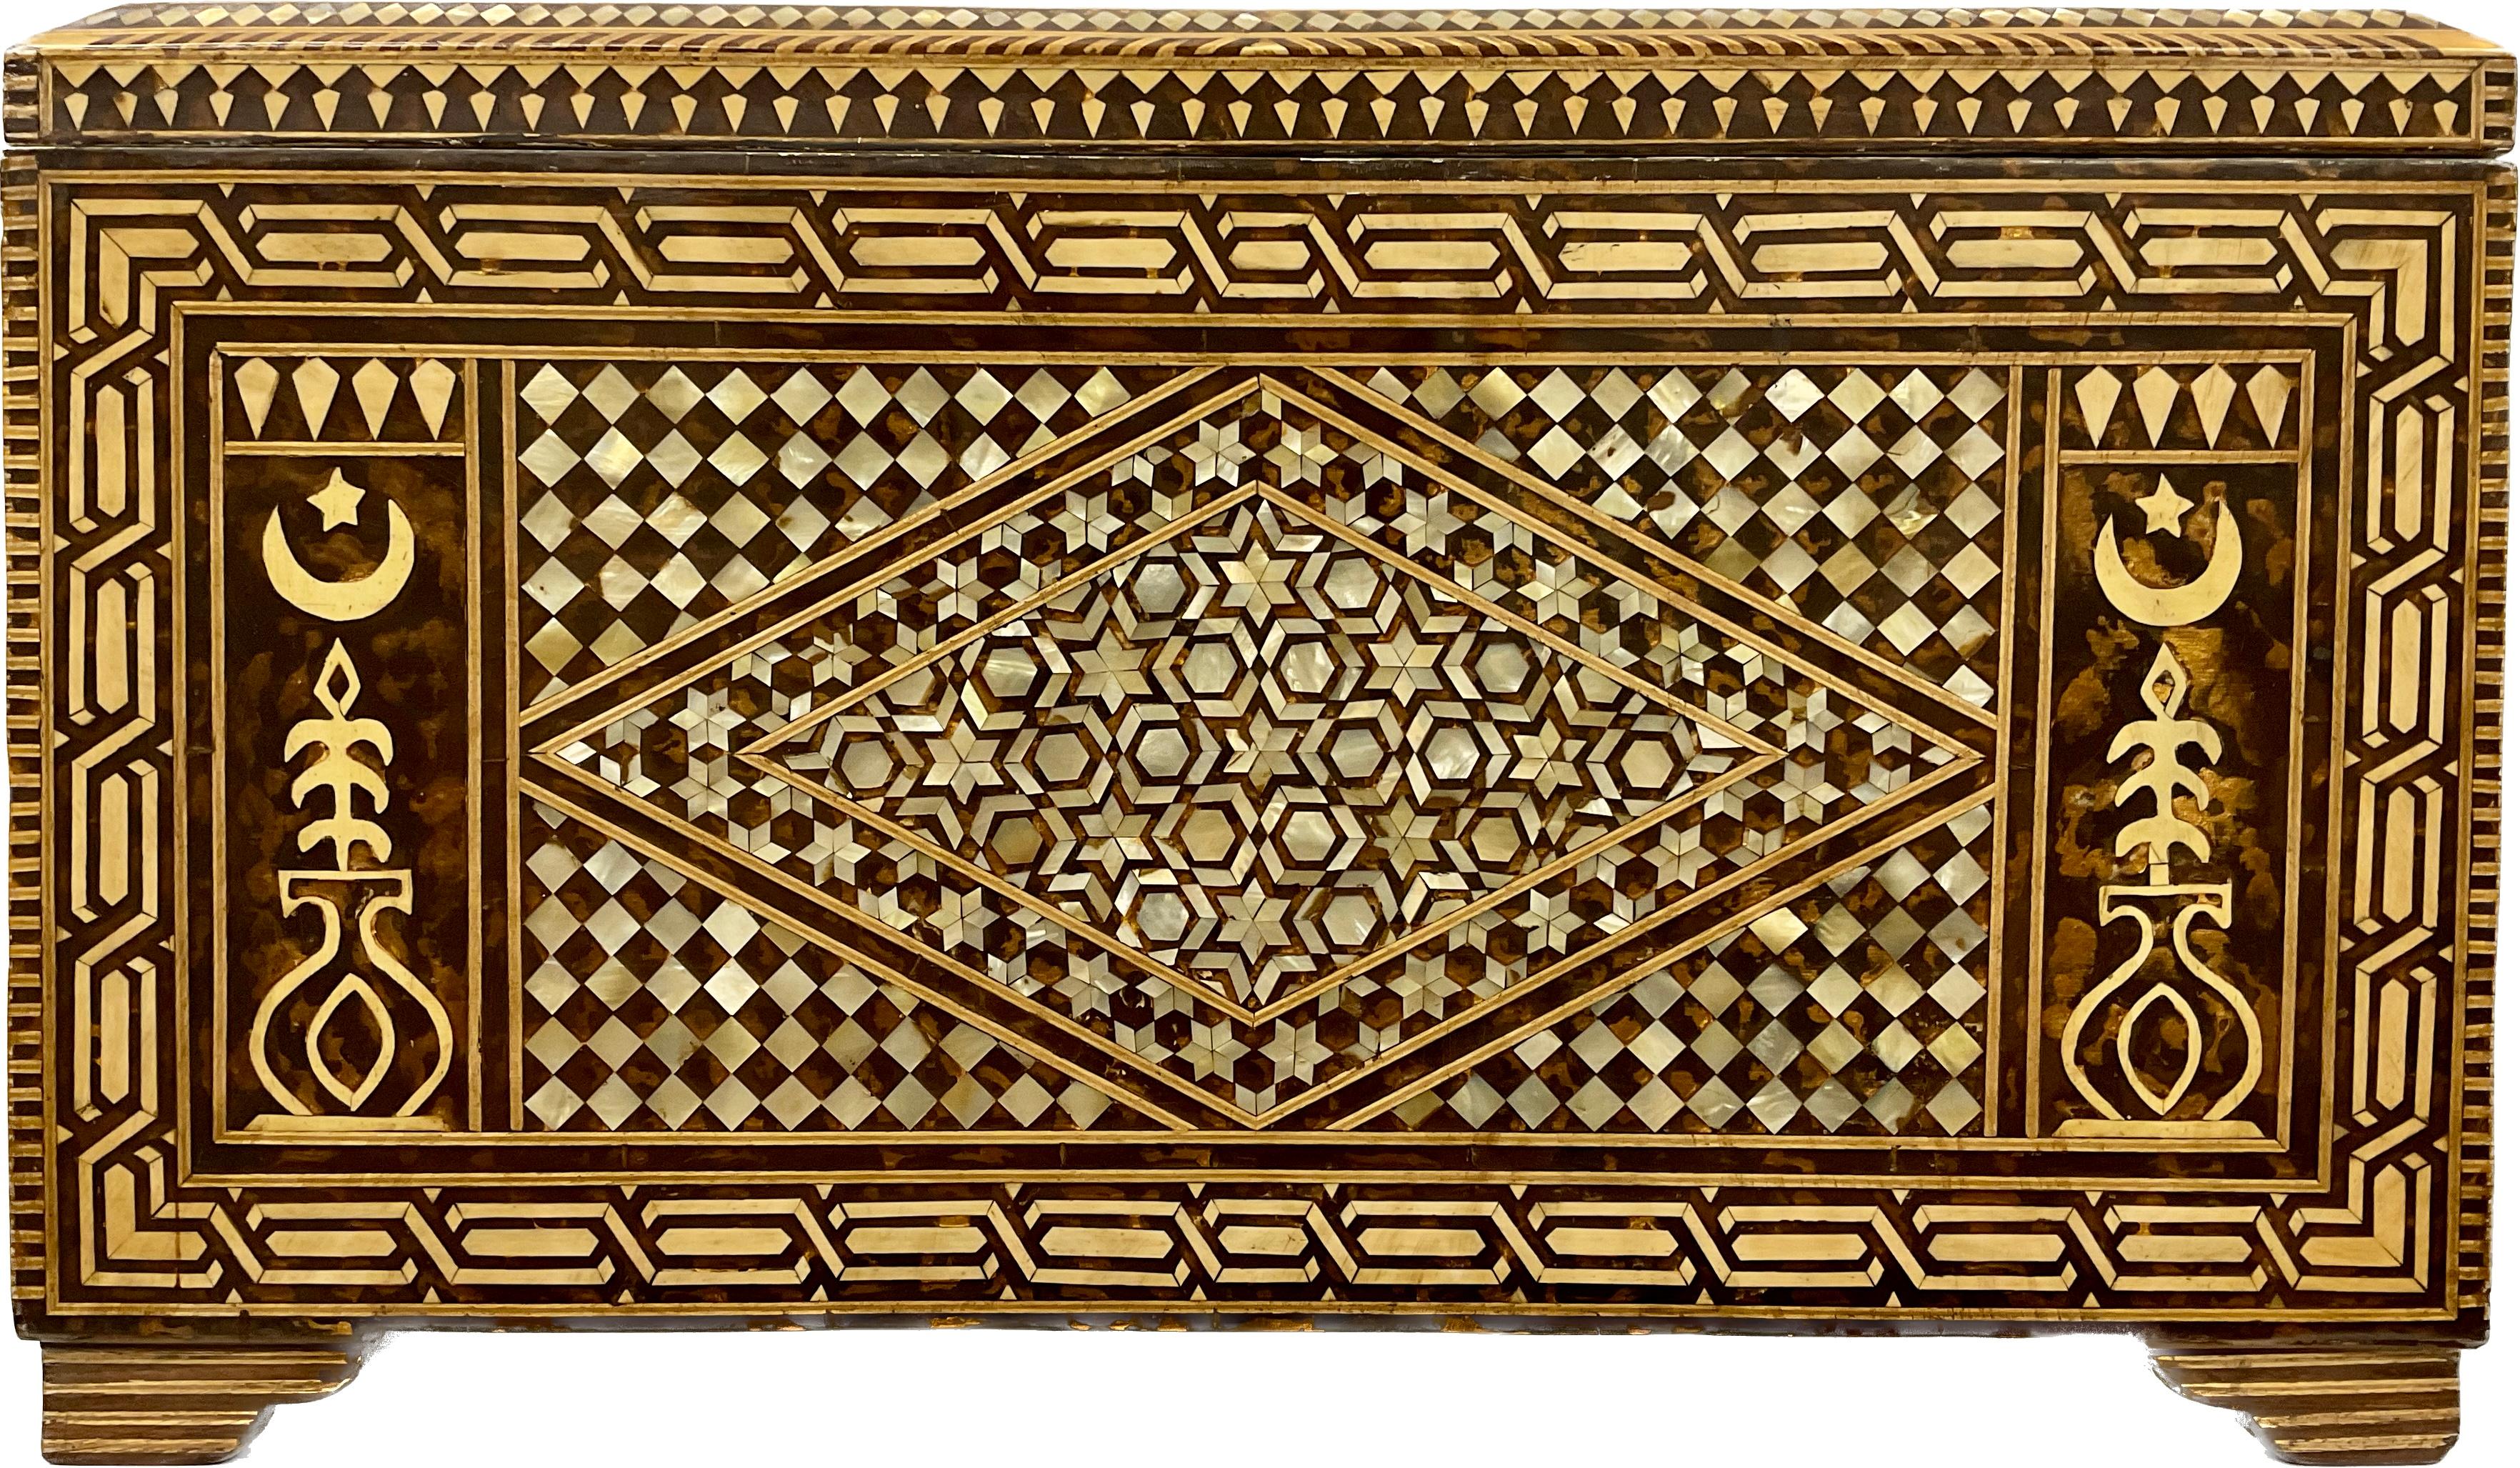 Eine große türkische Truhe mit Perlmutteinlagen, die durchgehend mit Blattranken und geometrischen Formen eingelegt ist und auf vier Beinen steht.
Ab dem 16. Jahrhundert waren die vorherrschenden Einflüsse in der islamischen Holzkunst die des